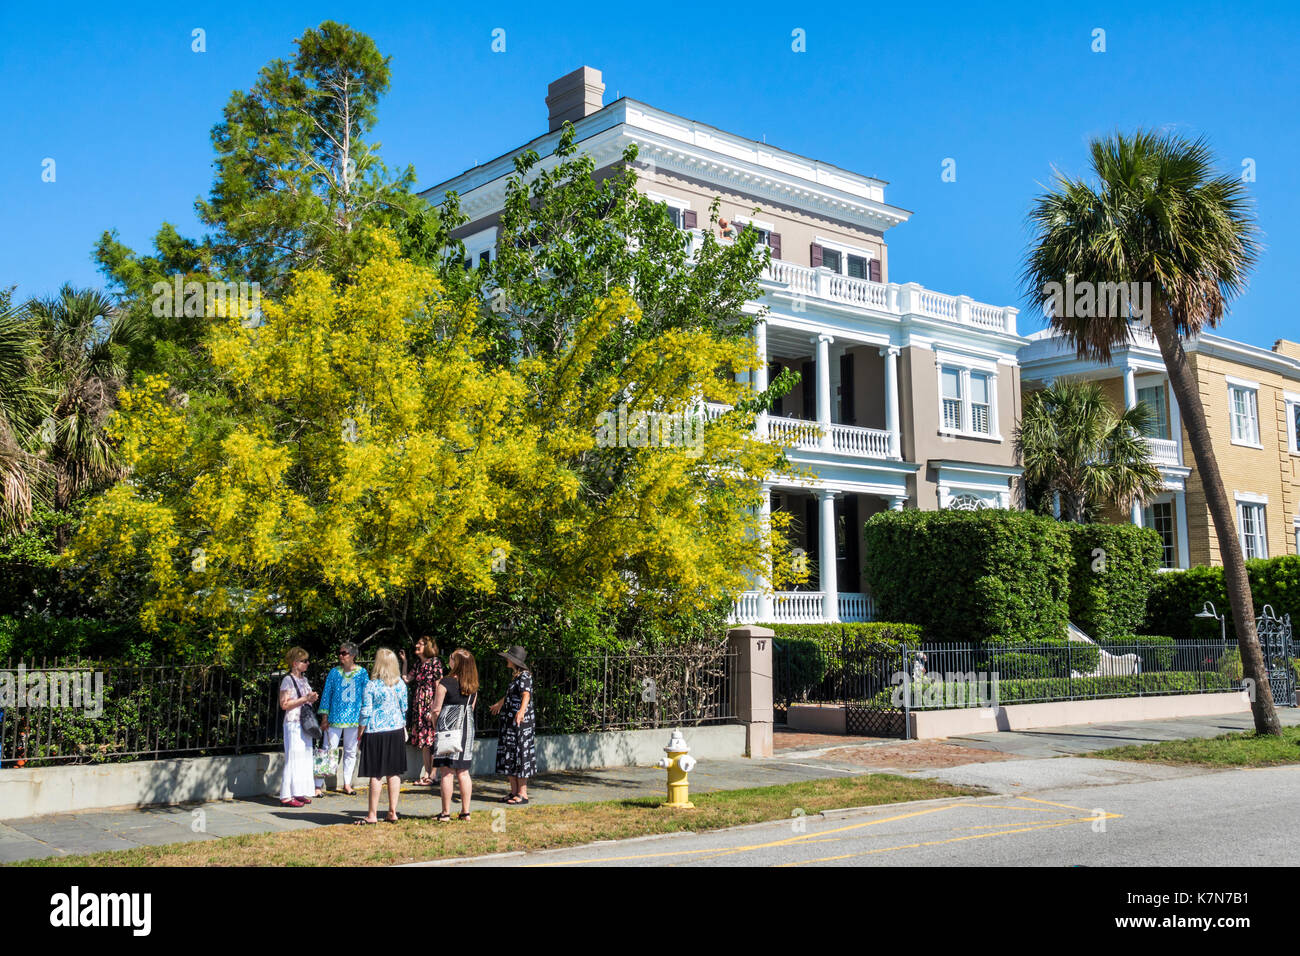 Charleston South Carolina, am Wasser, The Battery, historisches Haus, Architektur, SC170516021 Stockfoto